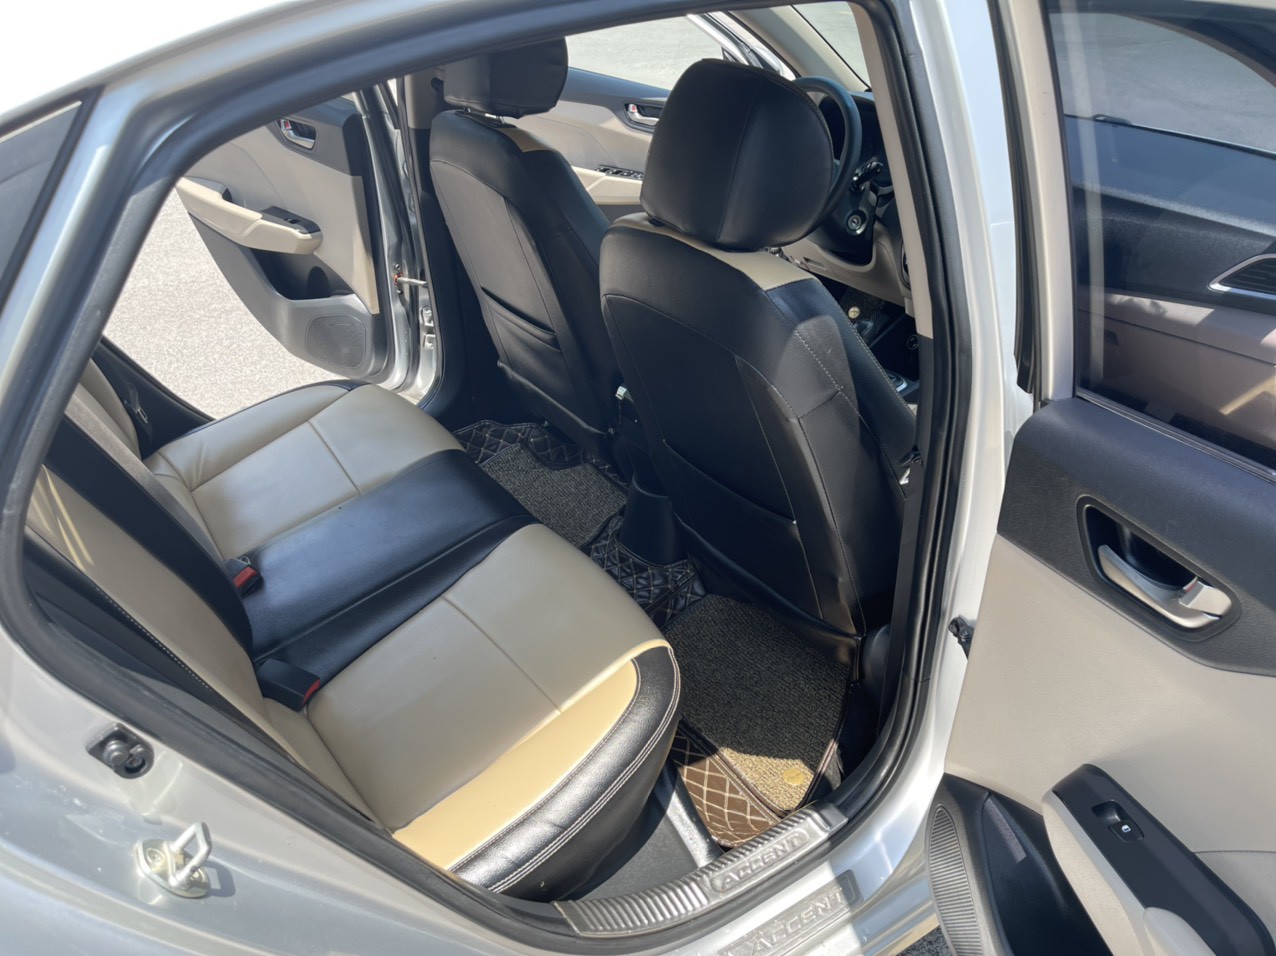 Bán xe Hyundai Accent 1.4MT 2018, màu bạc